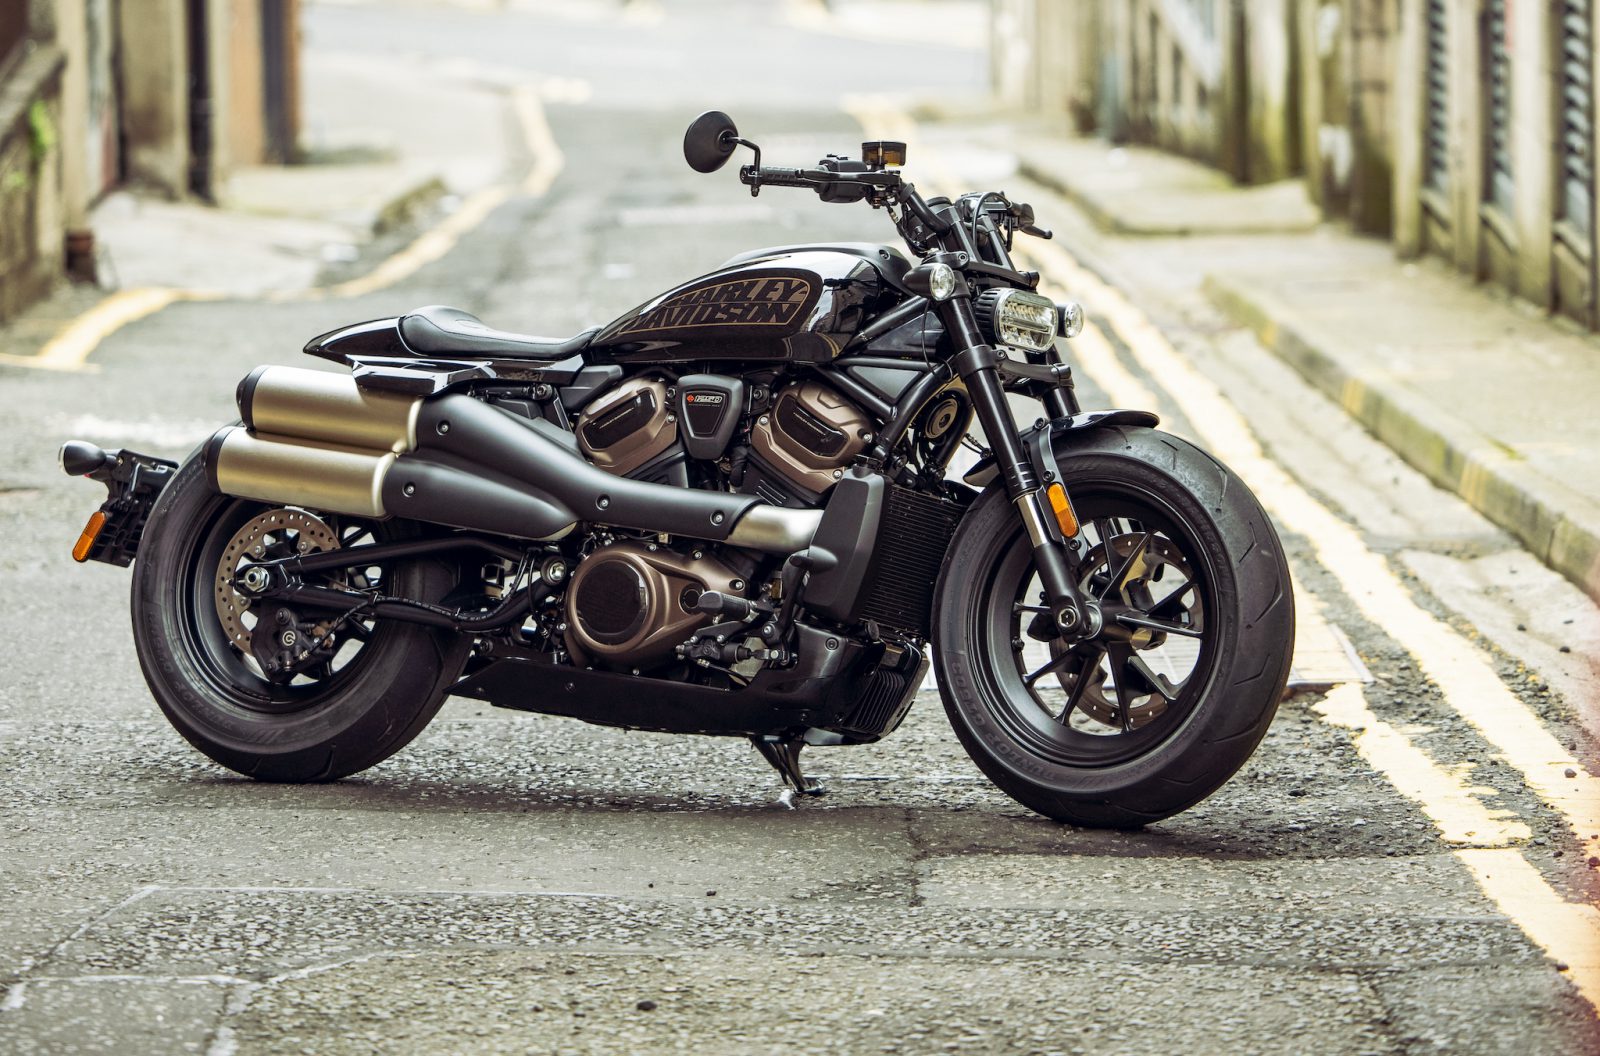 Nieuwe HarleyDavidson Sportster S kost 18.495 euro in Nederland